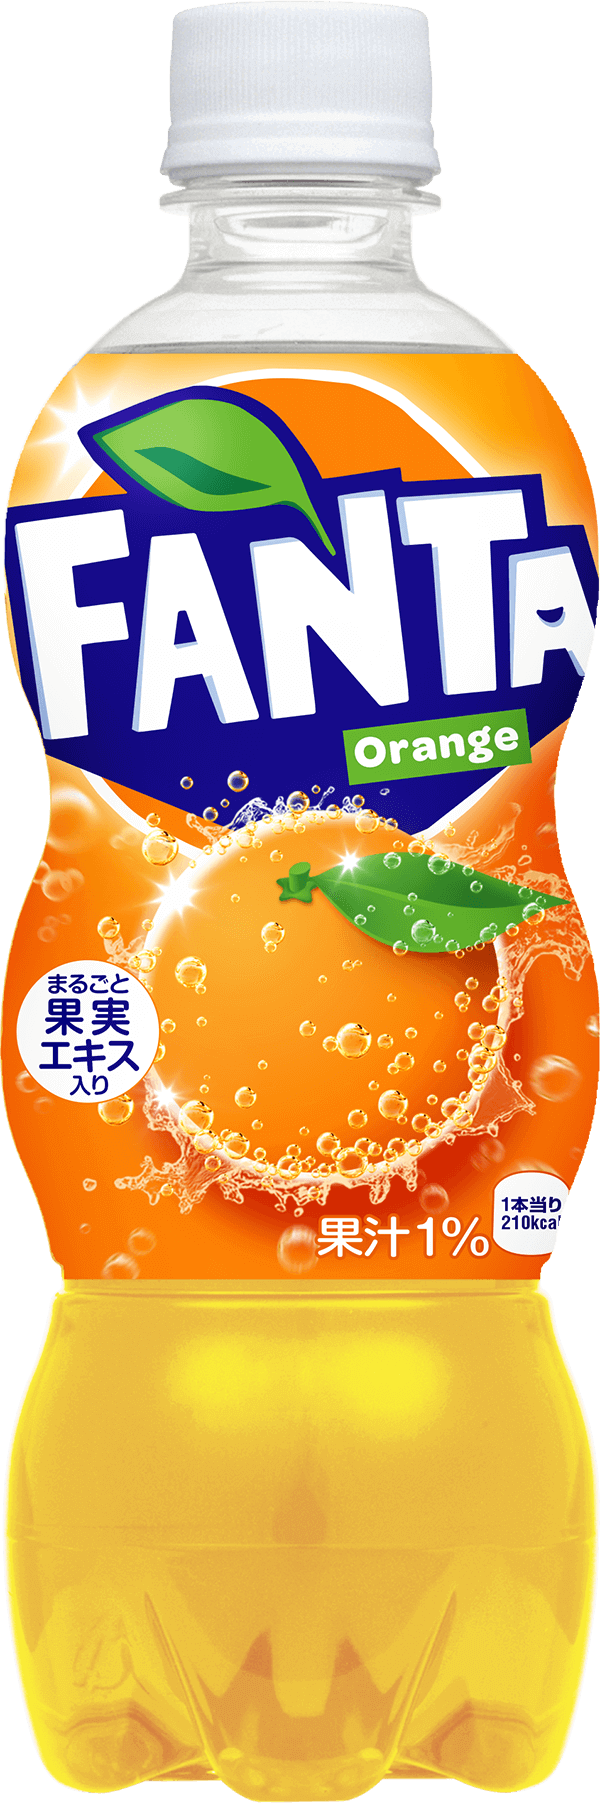 ファンタ / Fanta Official Site